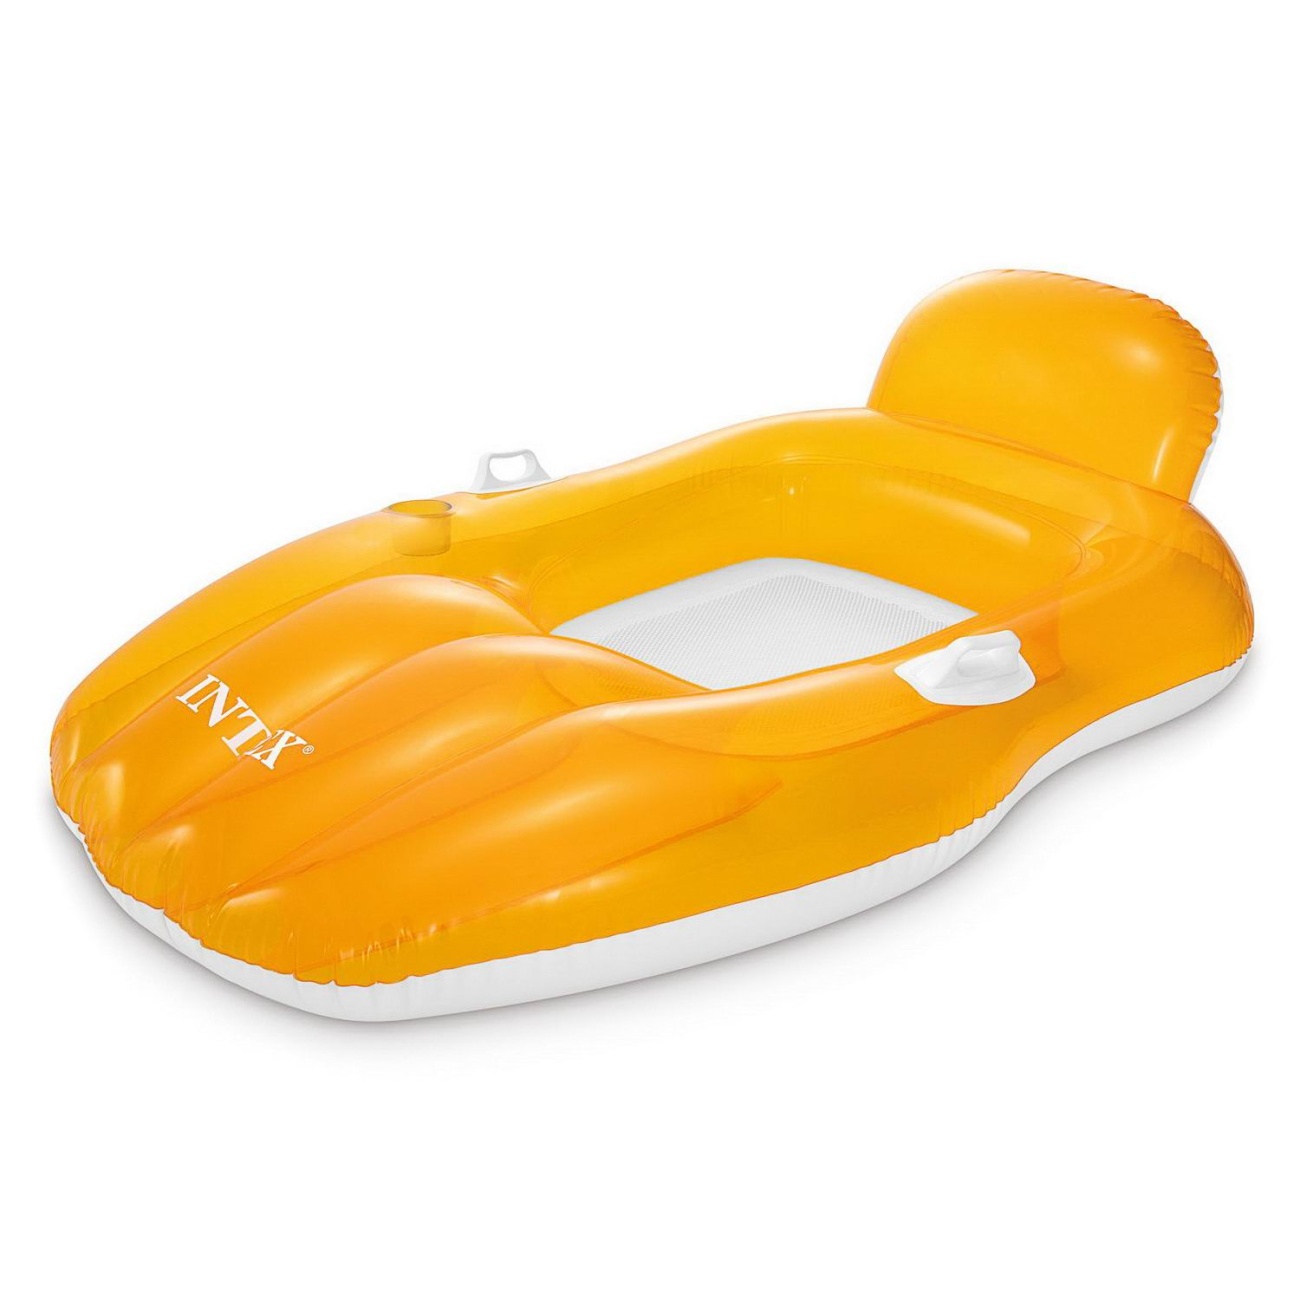 Матрас-лодка надувной INTEX CHILL N FLOAT LOUNGES желтый, 163x104 см int56805EU/жёлтый